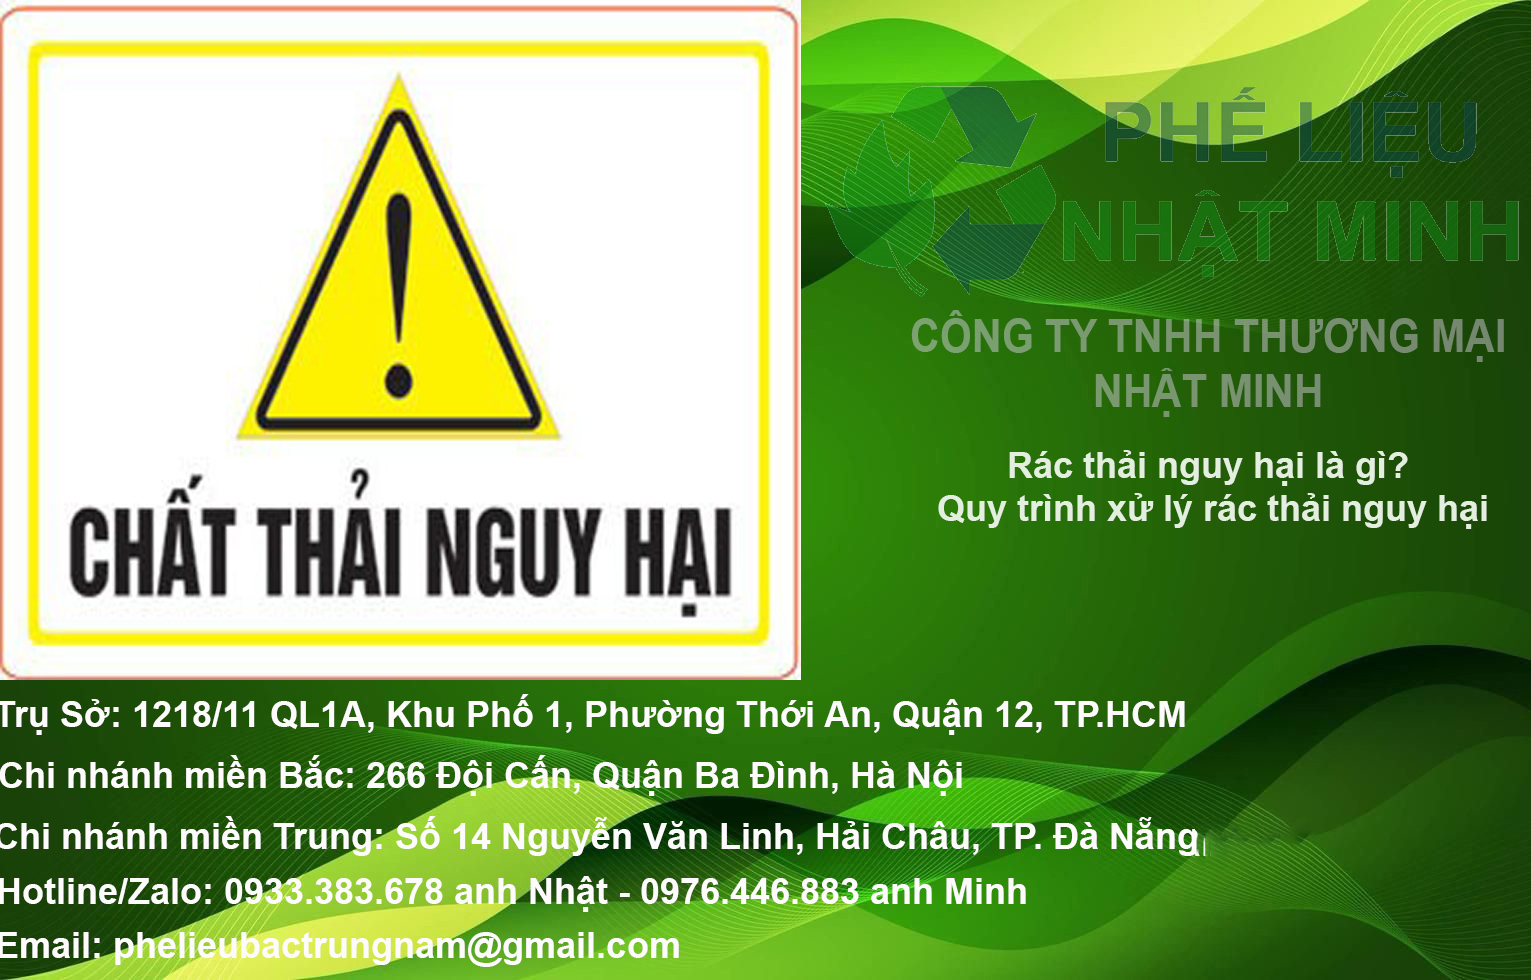 DINH NGHIA CHAT THAI NGUY HAI